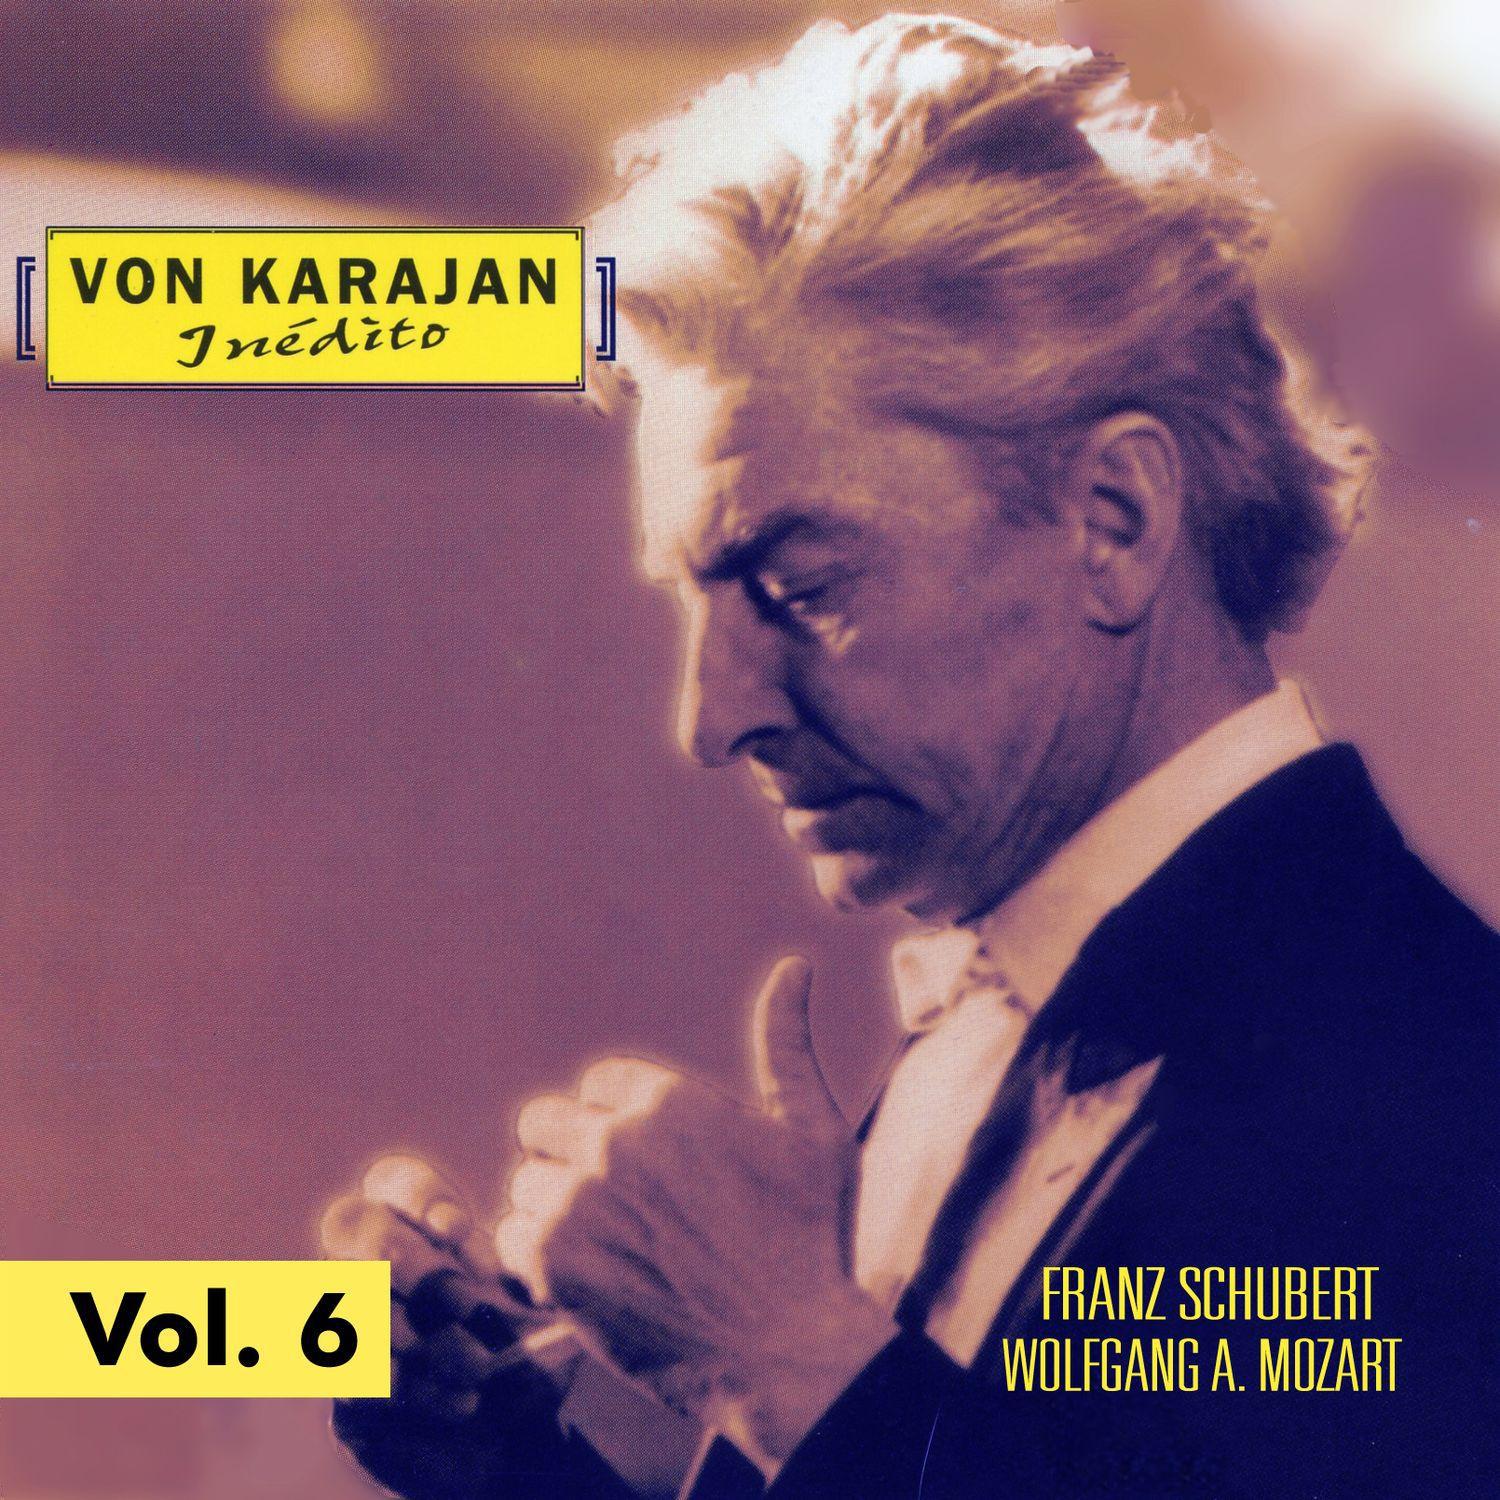 Von Karajan: Inédito Vol. 6专辑